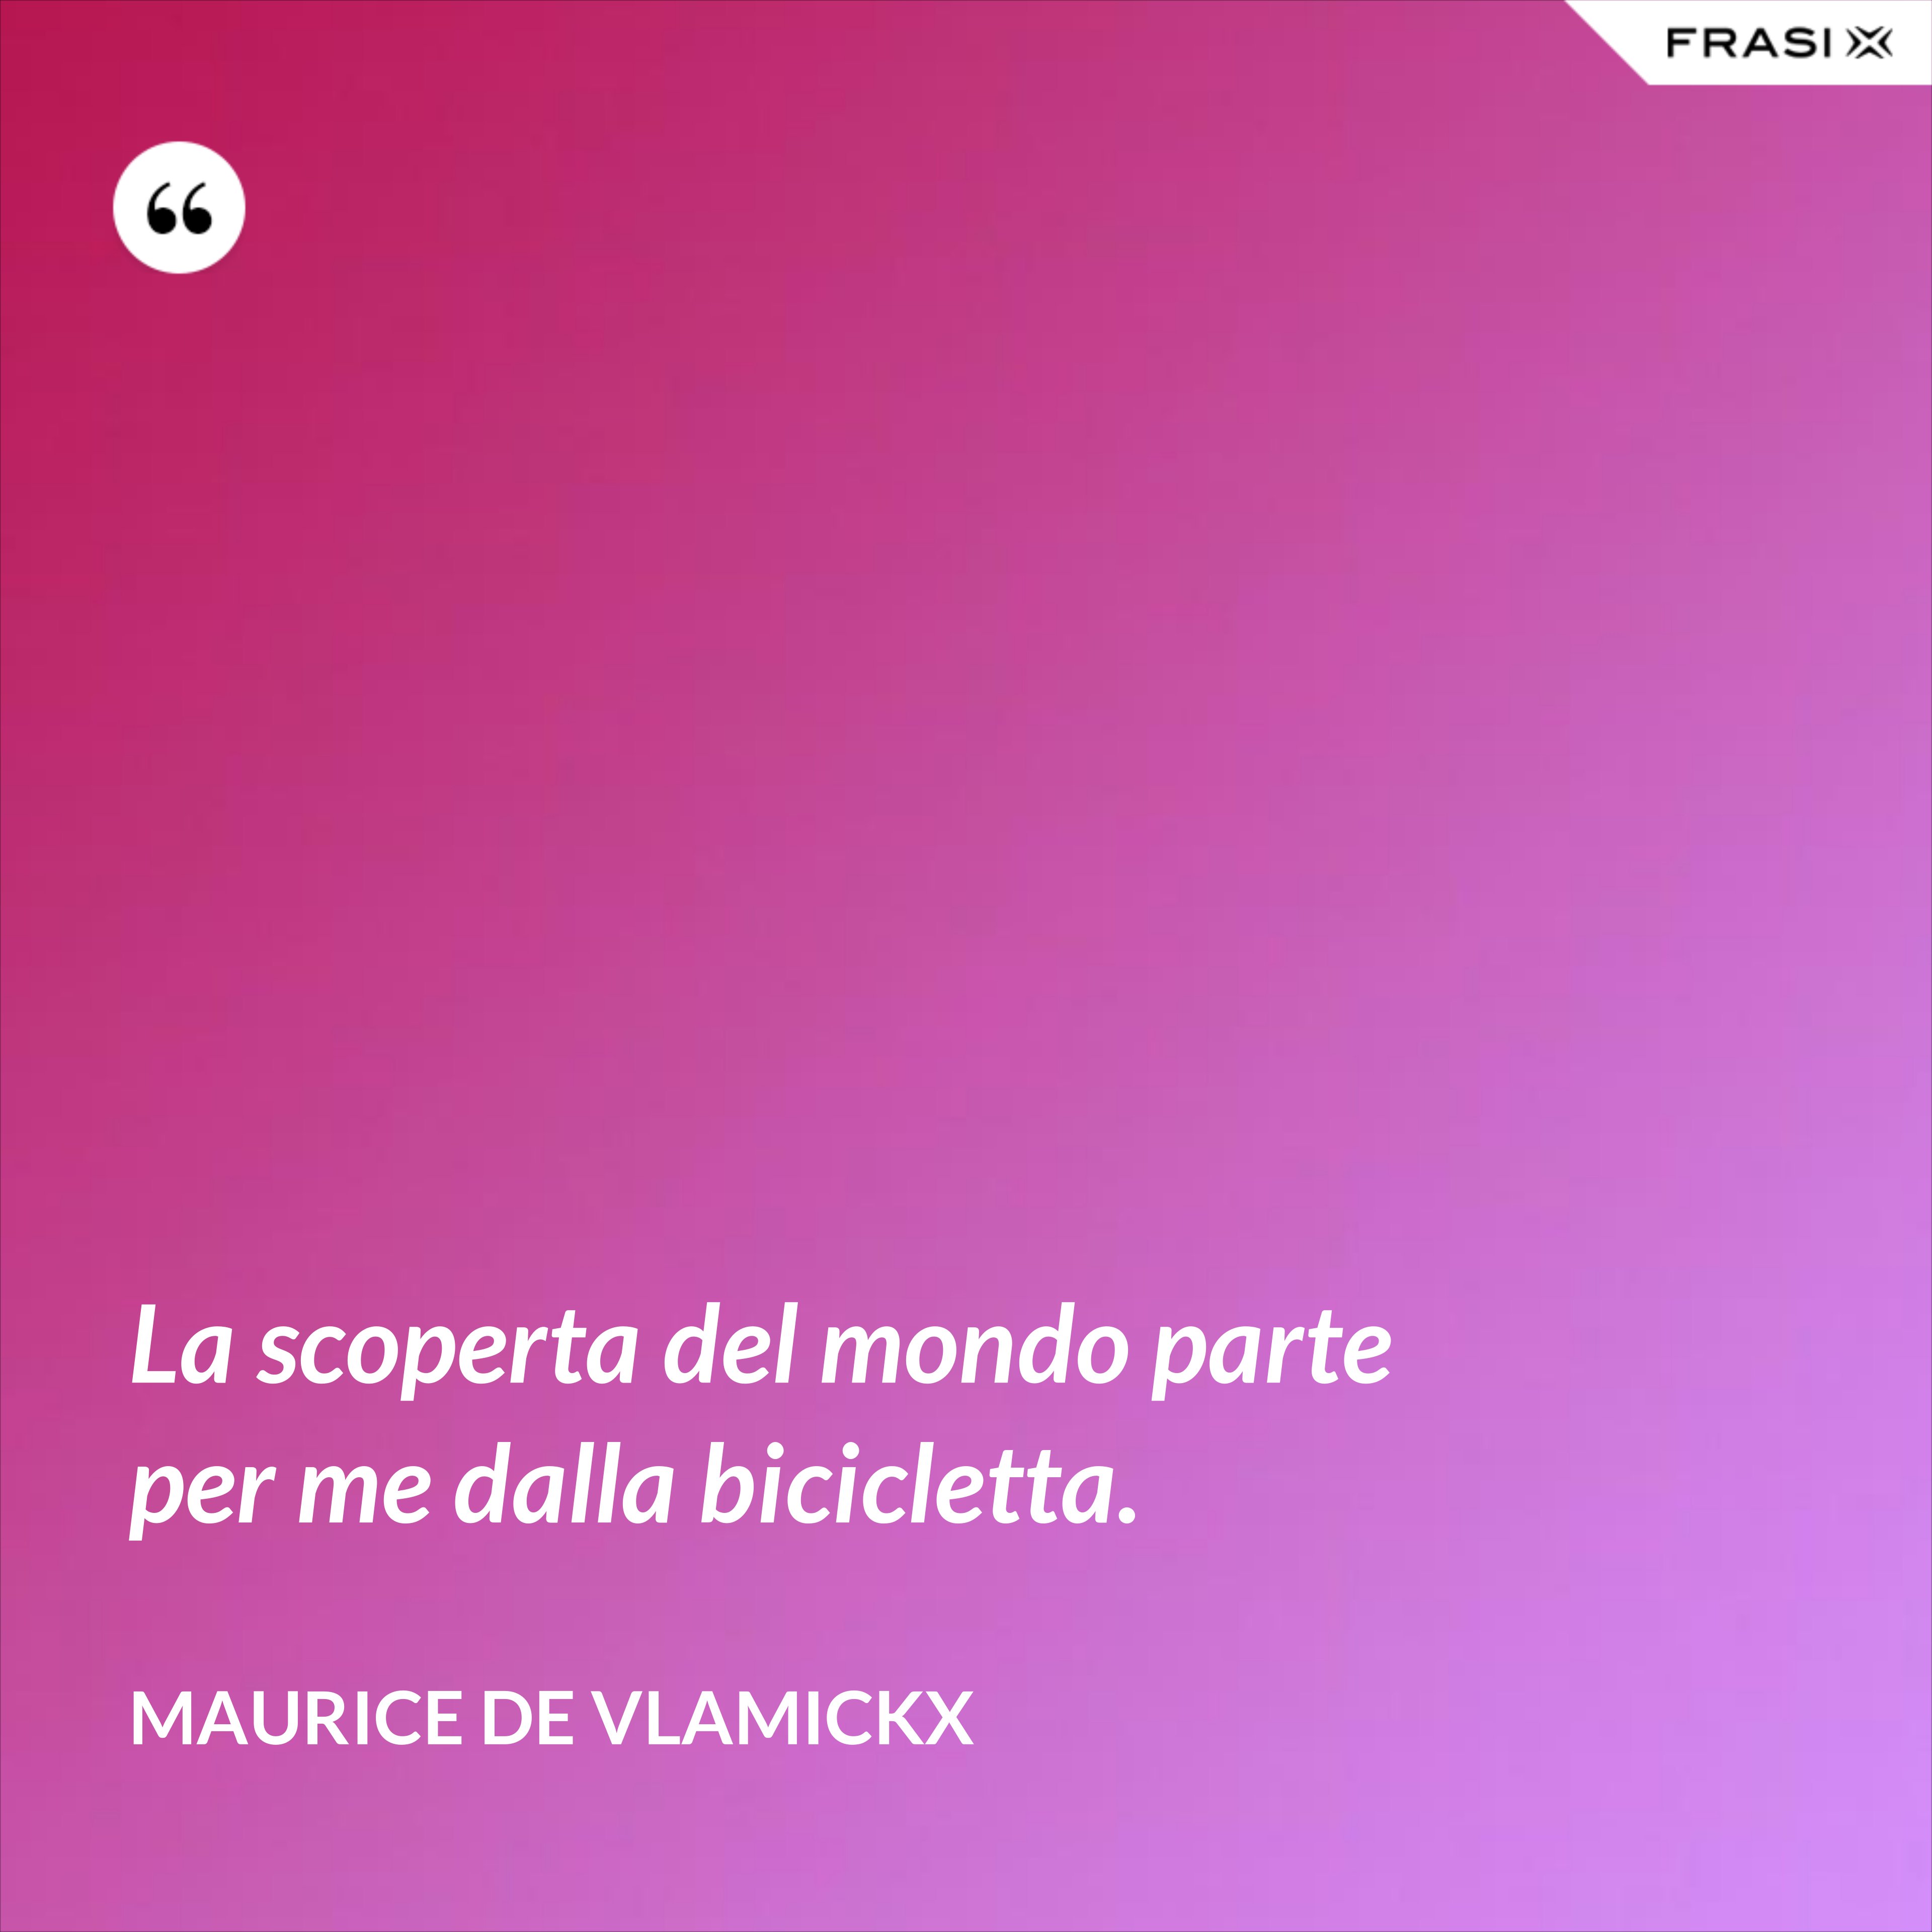 La scoperta del mondo parte per me dalla bicicletta. - Maurice de Vlamickx